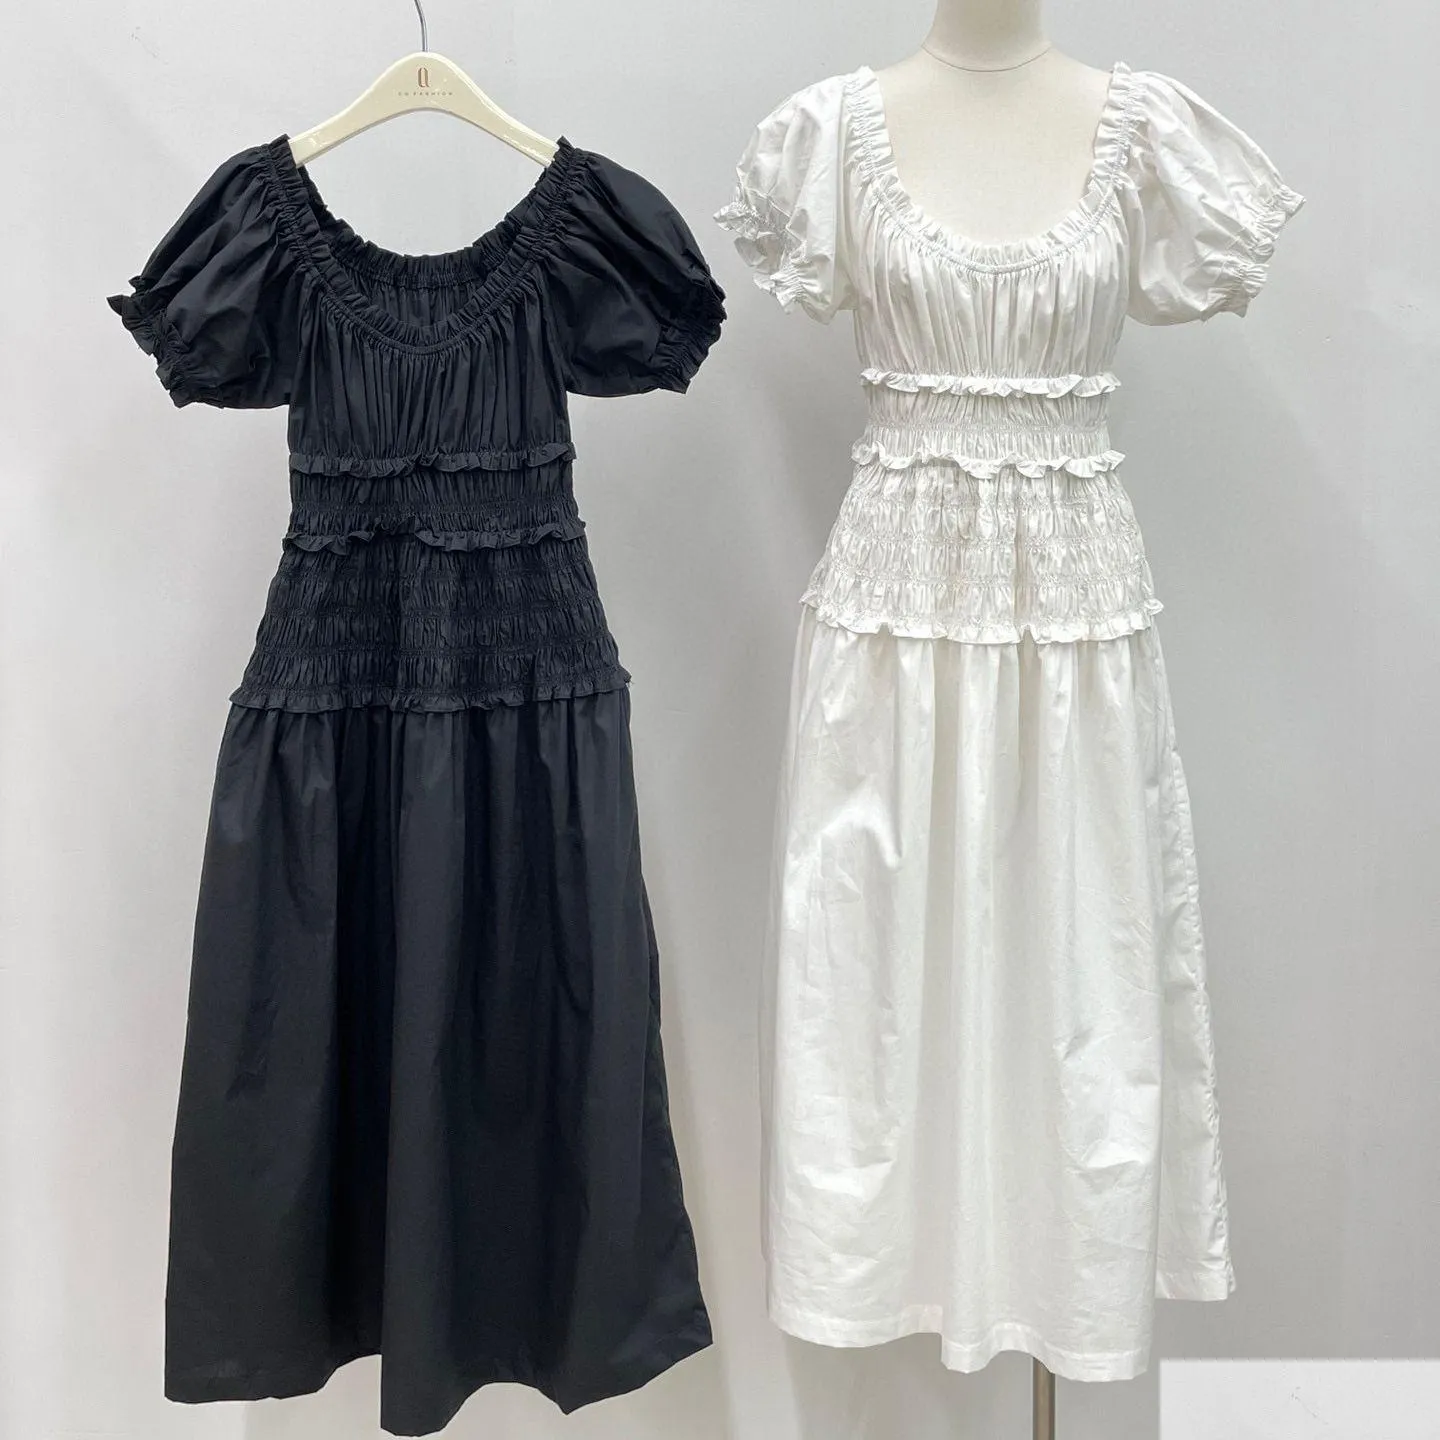 基本的なカジュアルドレスレディースドレスファッションブランドコットン黒と白の半袖集会ウエストミディドロップデリバリーアパレル衣類othj1